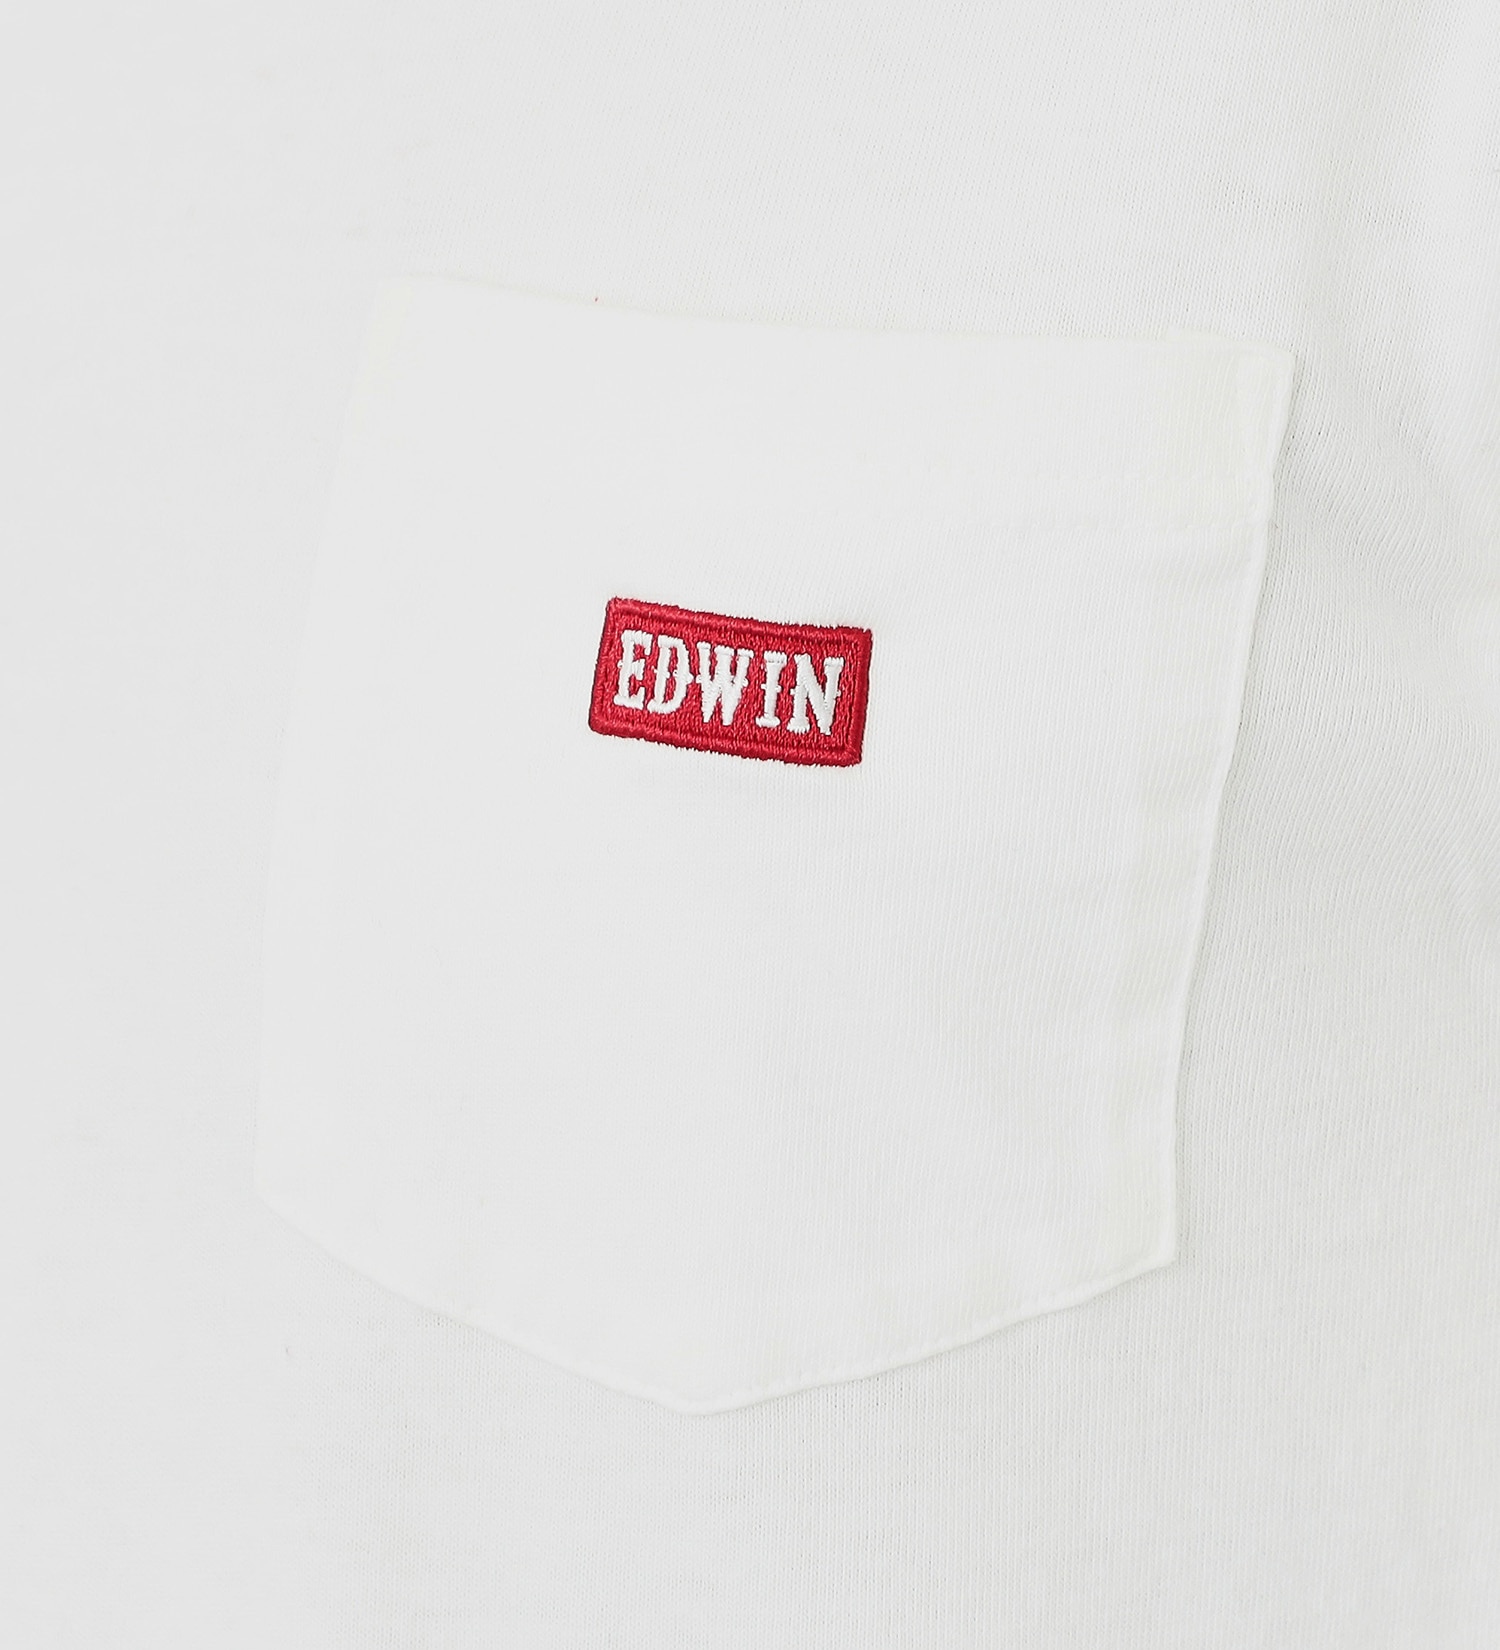 EDWIN(エドウイン)の【BLACKFRIDAY】ロングスリーブ胸ポケットロゴTシャツ　ロンT ベーシック カットソー 洗える 長袖 メンズ【アウトレット店舗・WEB限定】|トップス/Tシャツ/カットソー/メンズ|ホワイト